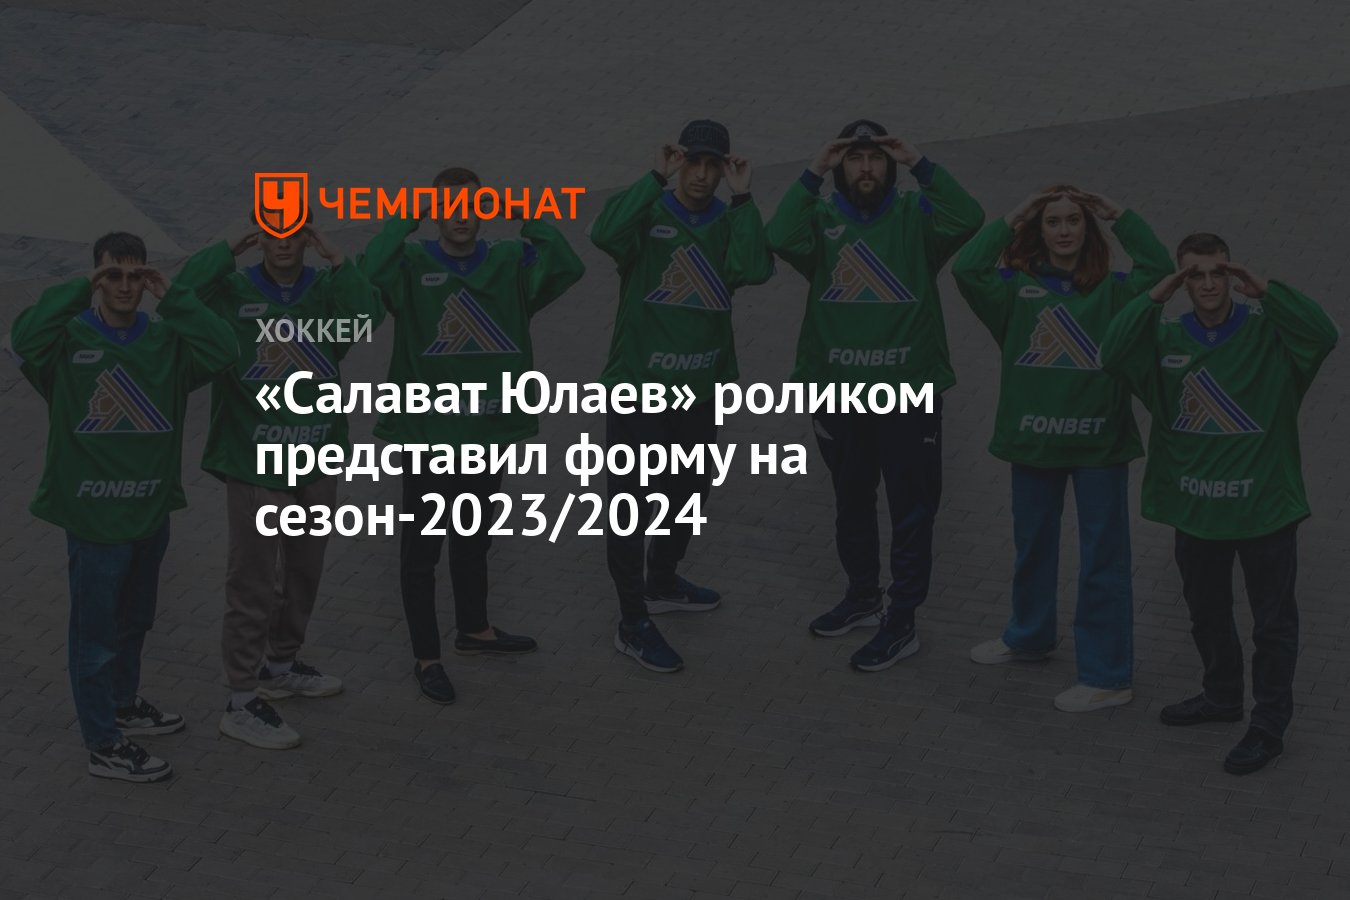 Россия мои горизонты 2023 2024 март. Салават Юлаев хоккейный клуб состав 2023 2024.